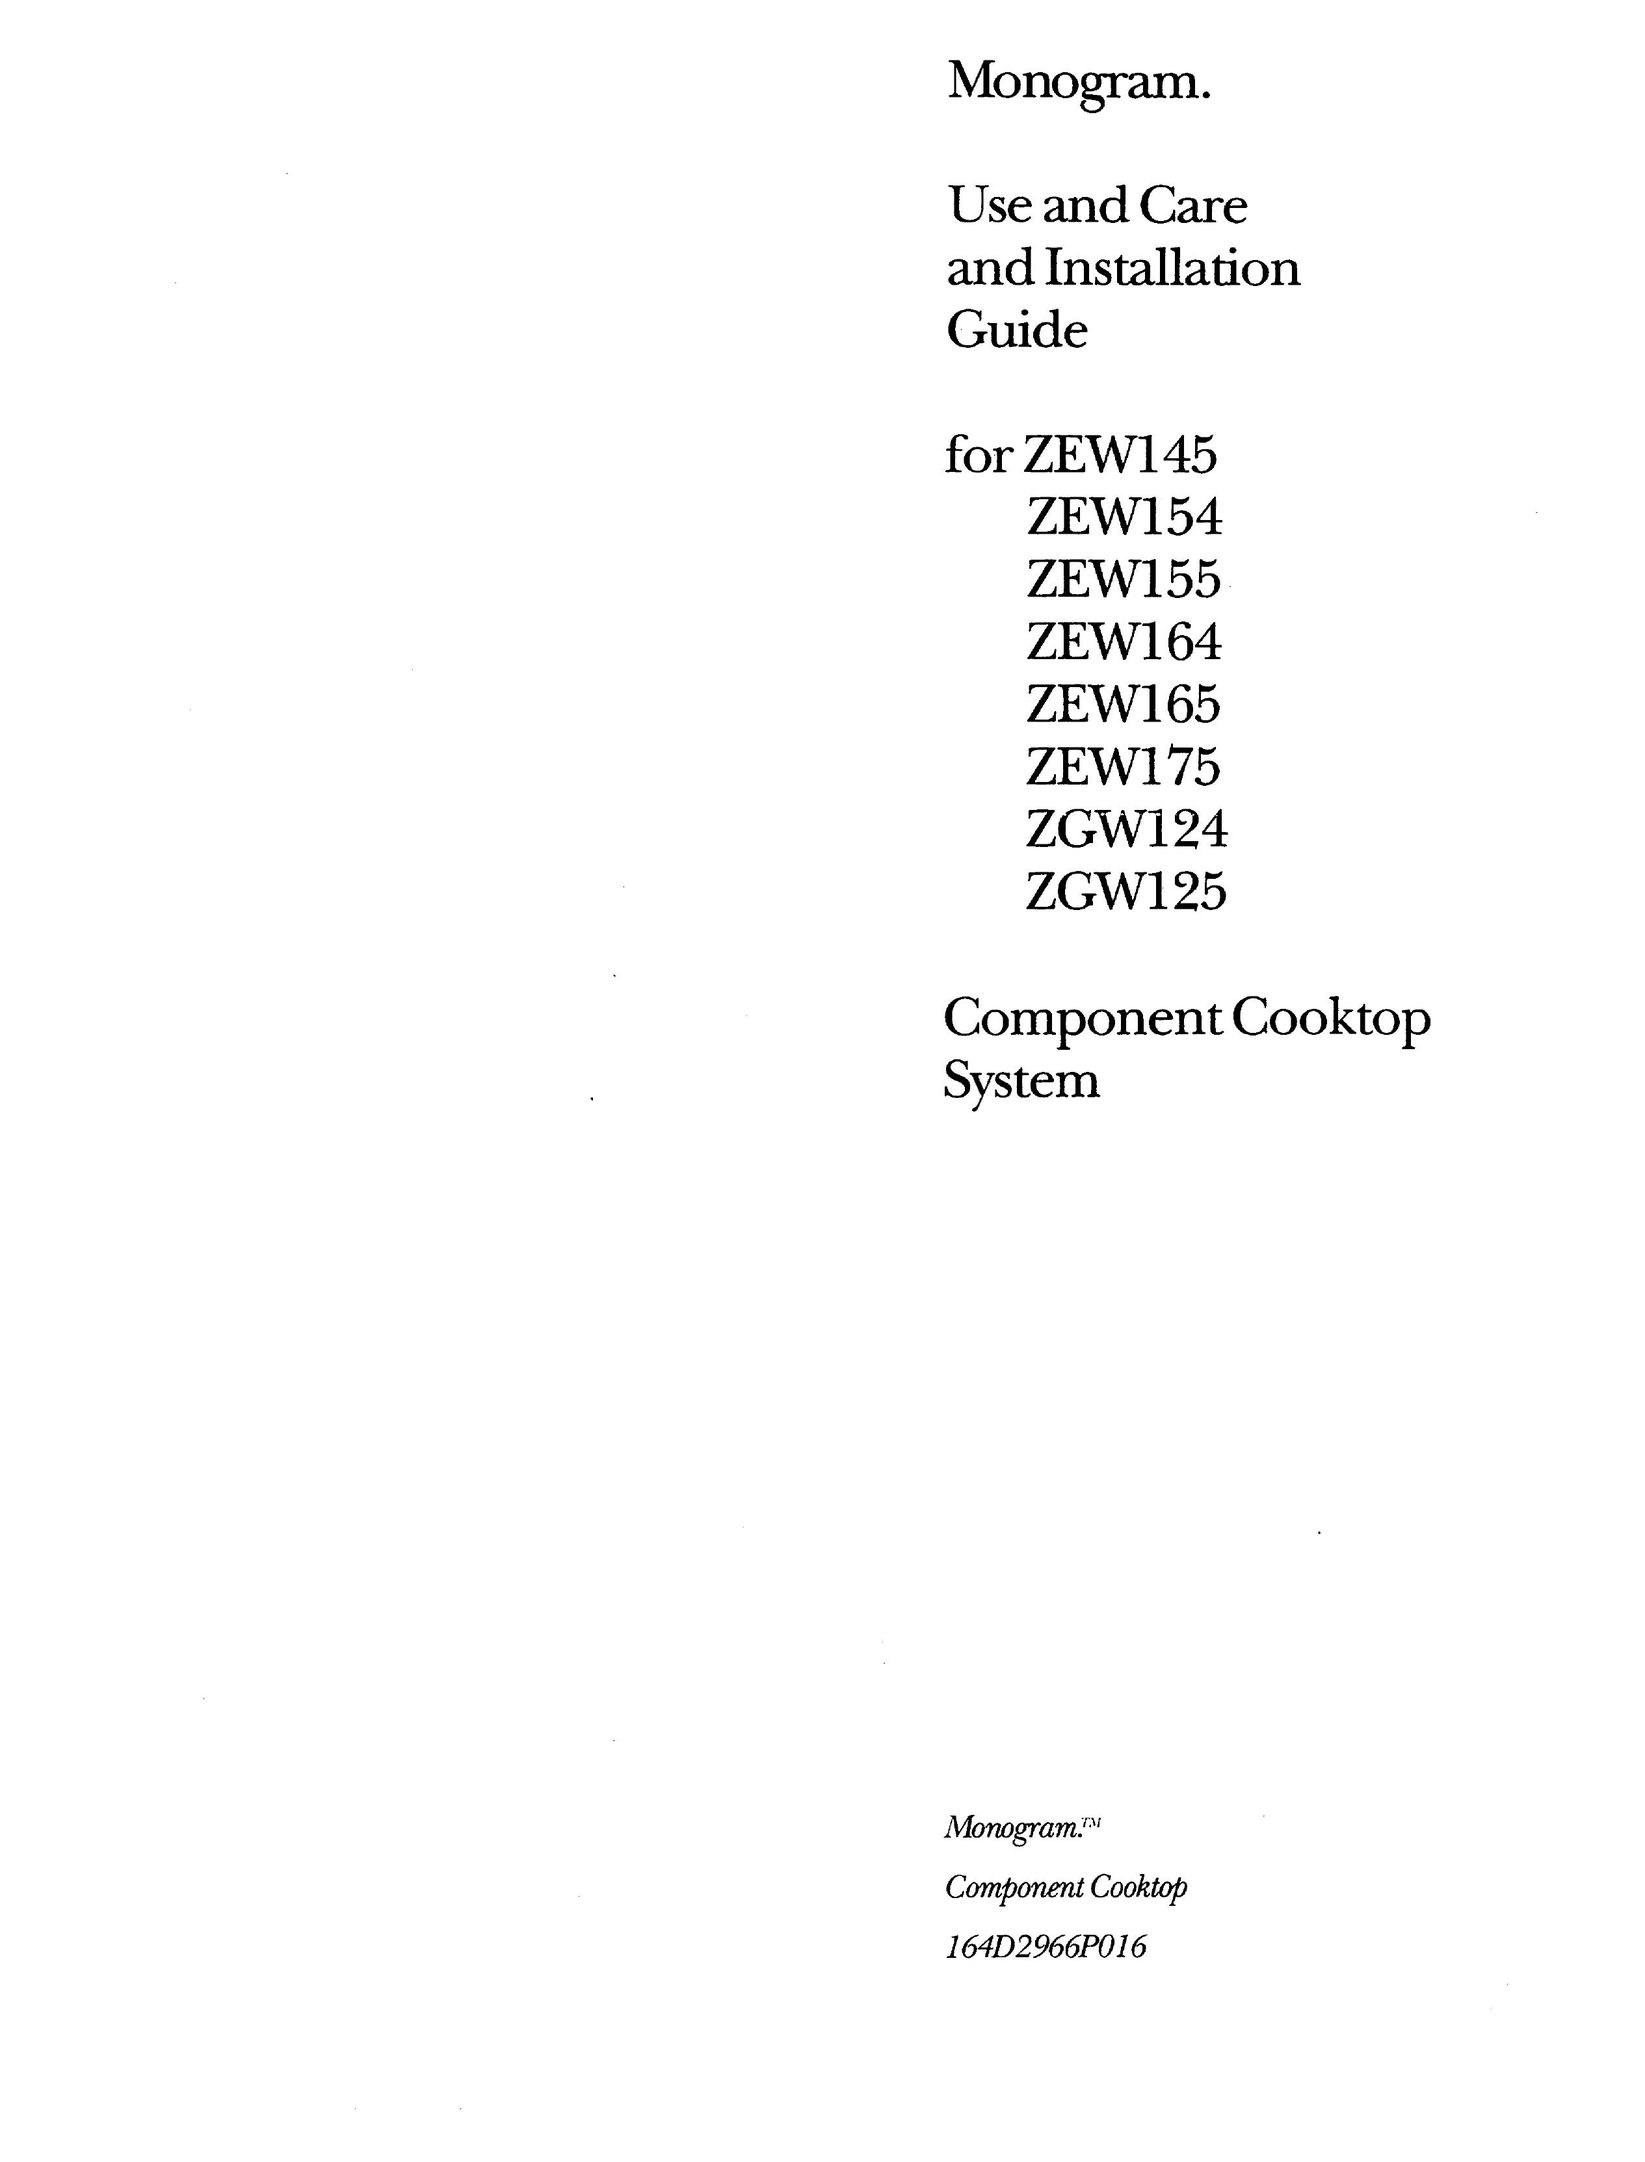 GE Monogram ZEW175 Cooktop User Manual